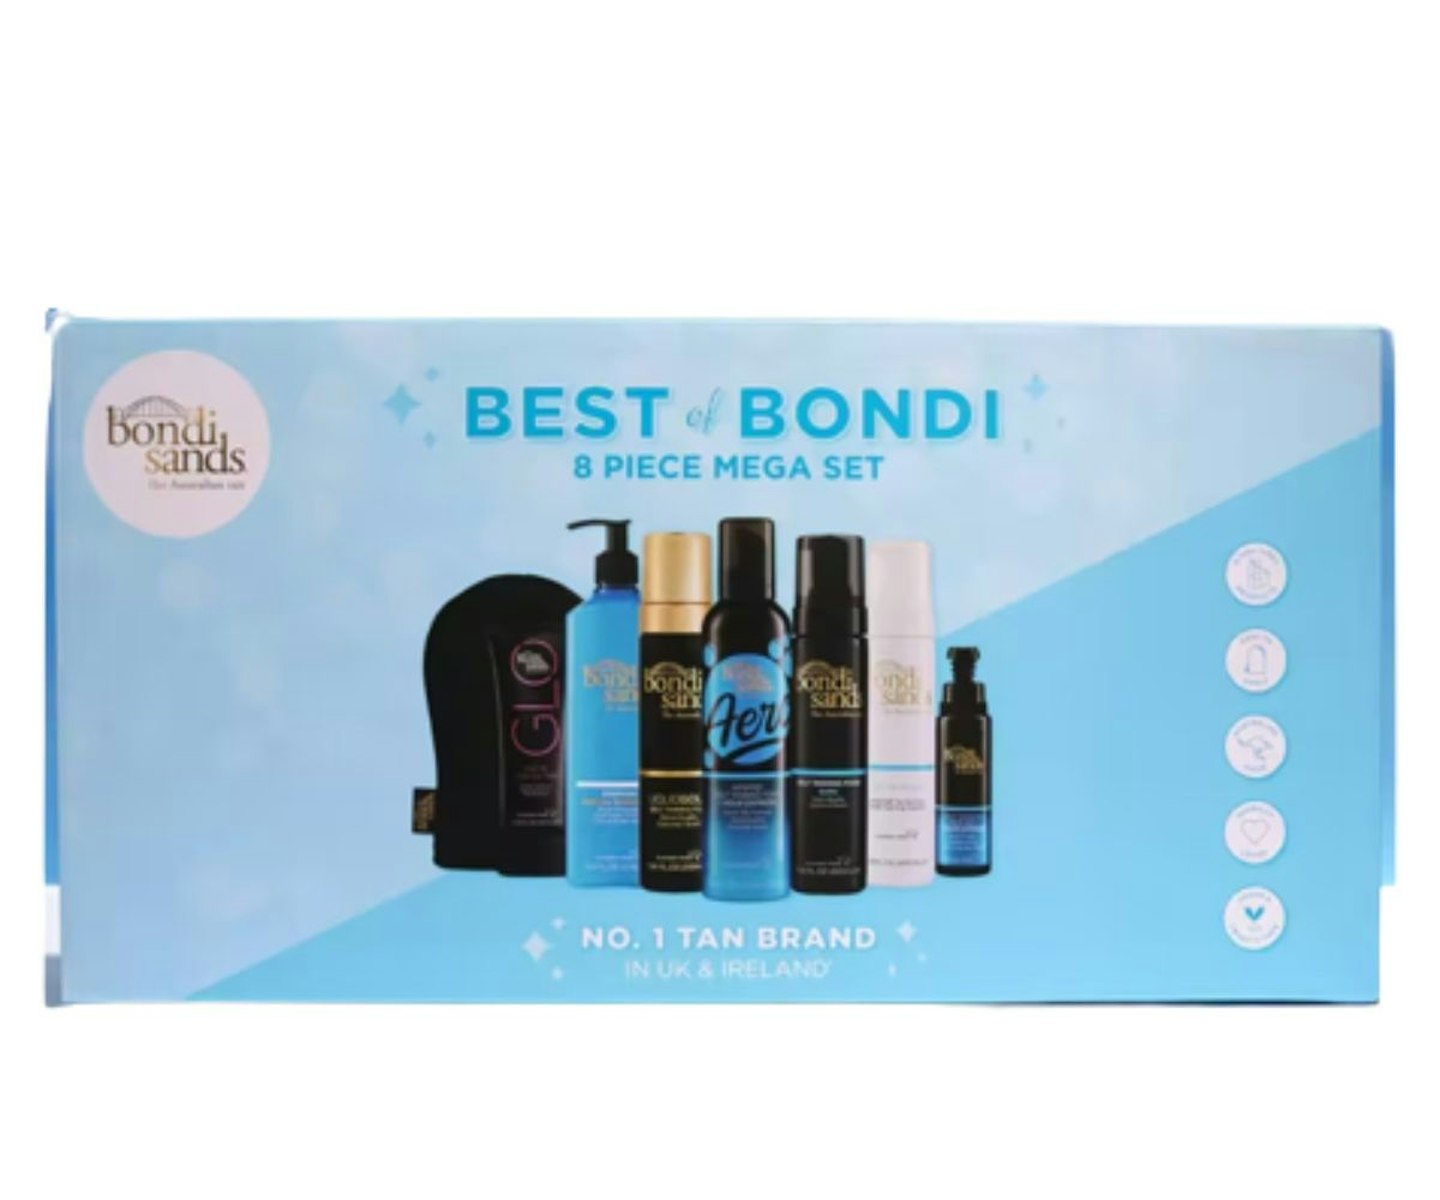 Bondi Sands Best of Bondi Set